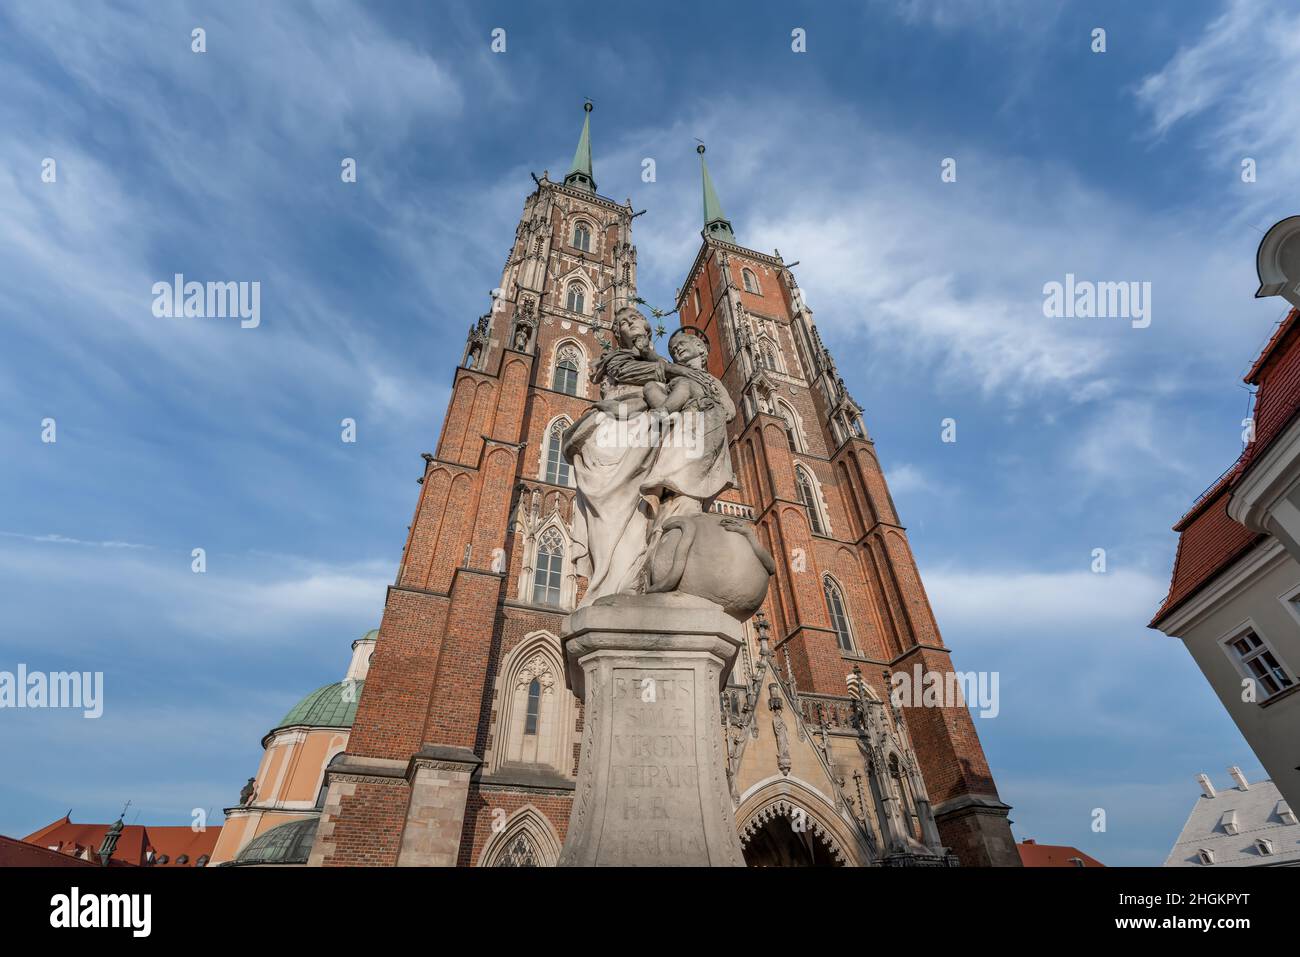 Statue der Muttergottes und Kathedrale des Hl. Johannes des Täufers auf der Dominsel (Ostrow Tumski) - Breslau, Polen Stockfoto